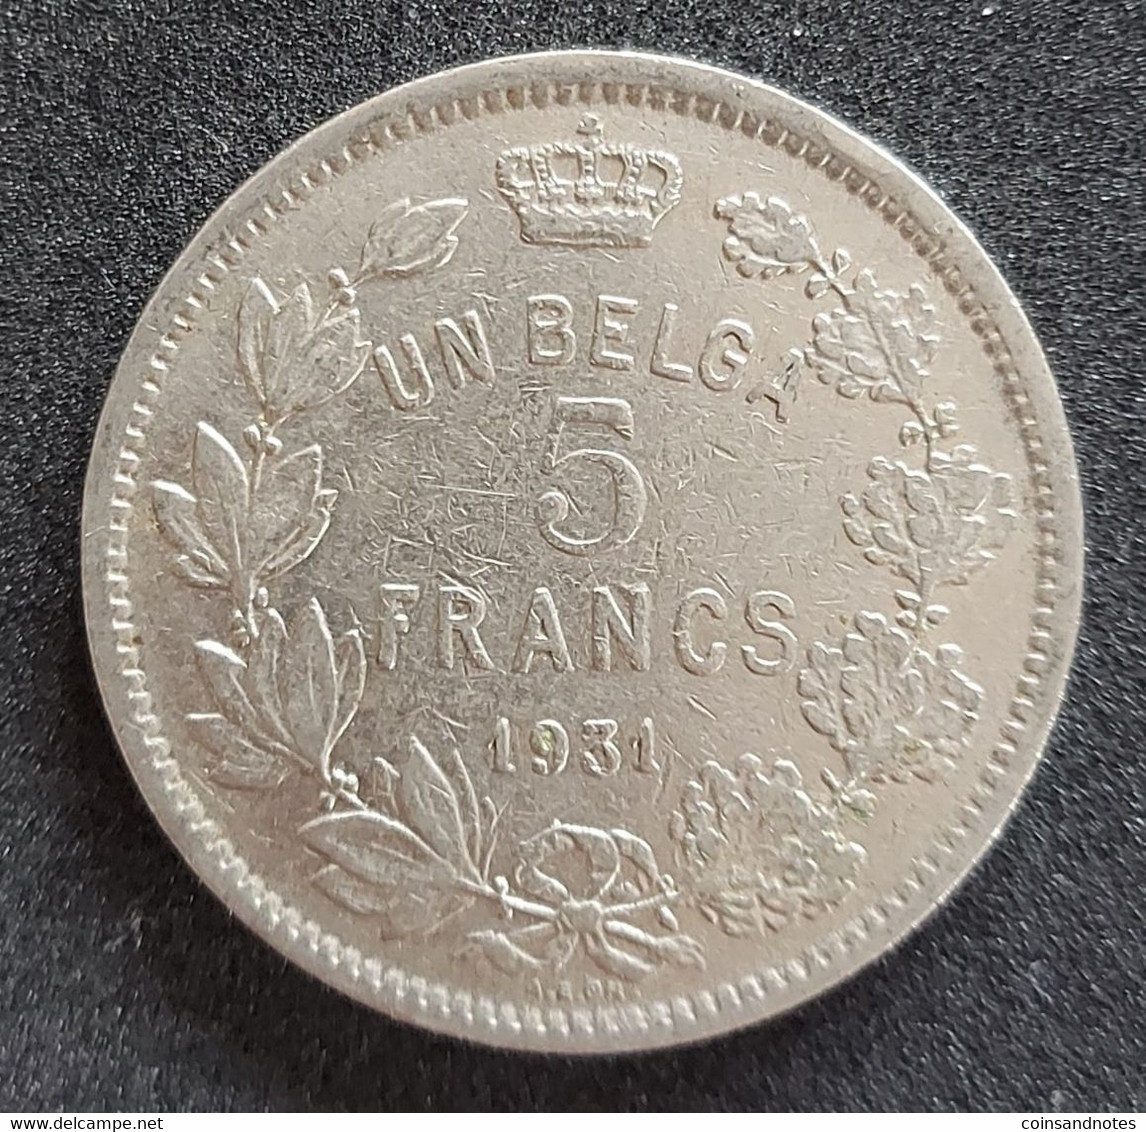 Belgium 1931 - 5 Francs/Un Belga Nikkel FR - Albert I - Morin 384b - Pr - 5 Francs & 1 Belga